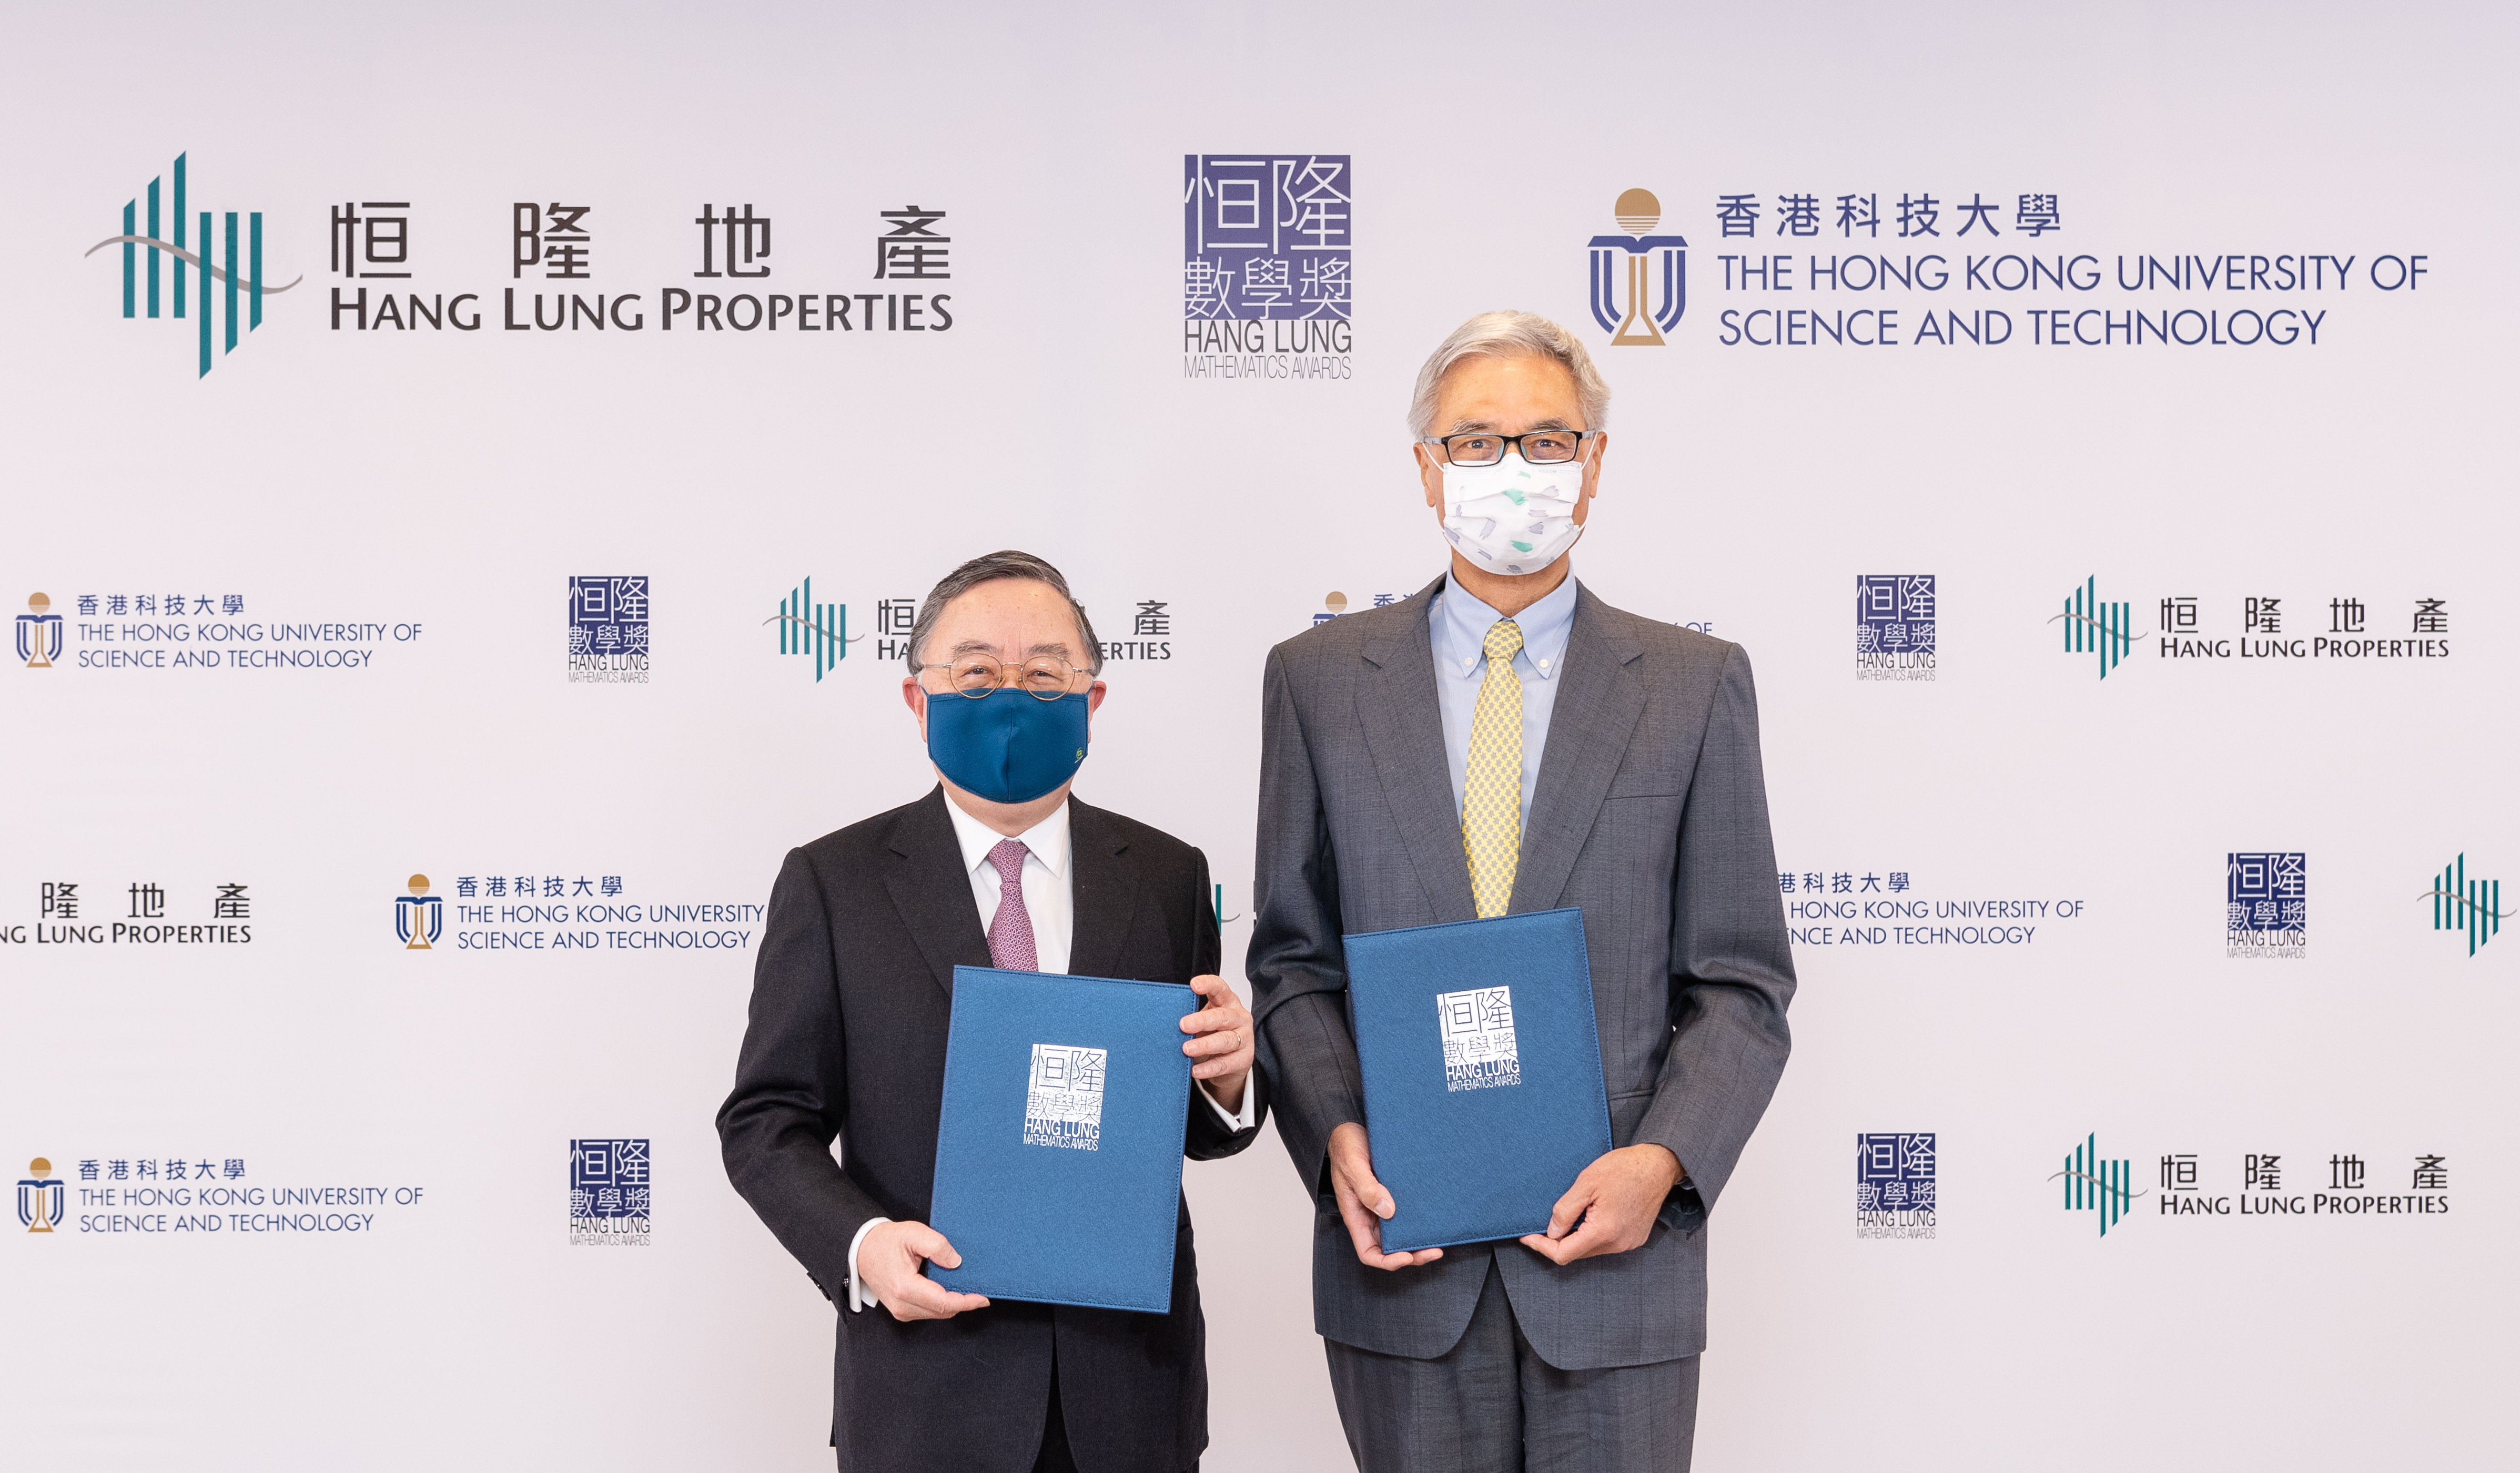 恒隆地产董事长陈启宗先生(左)及香港科技大学校长史维教授(右)签署合作协议，宣布携手举办恒隆数学奖培育本地年轻数理人才